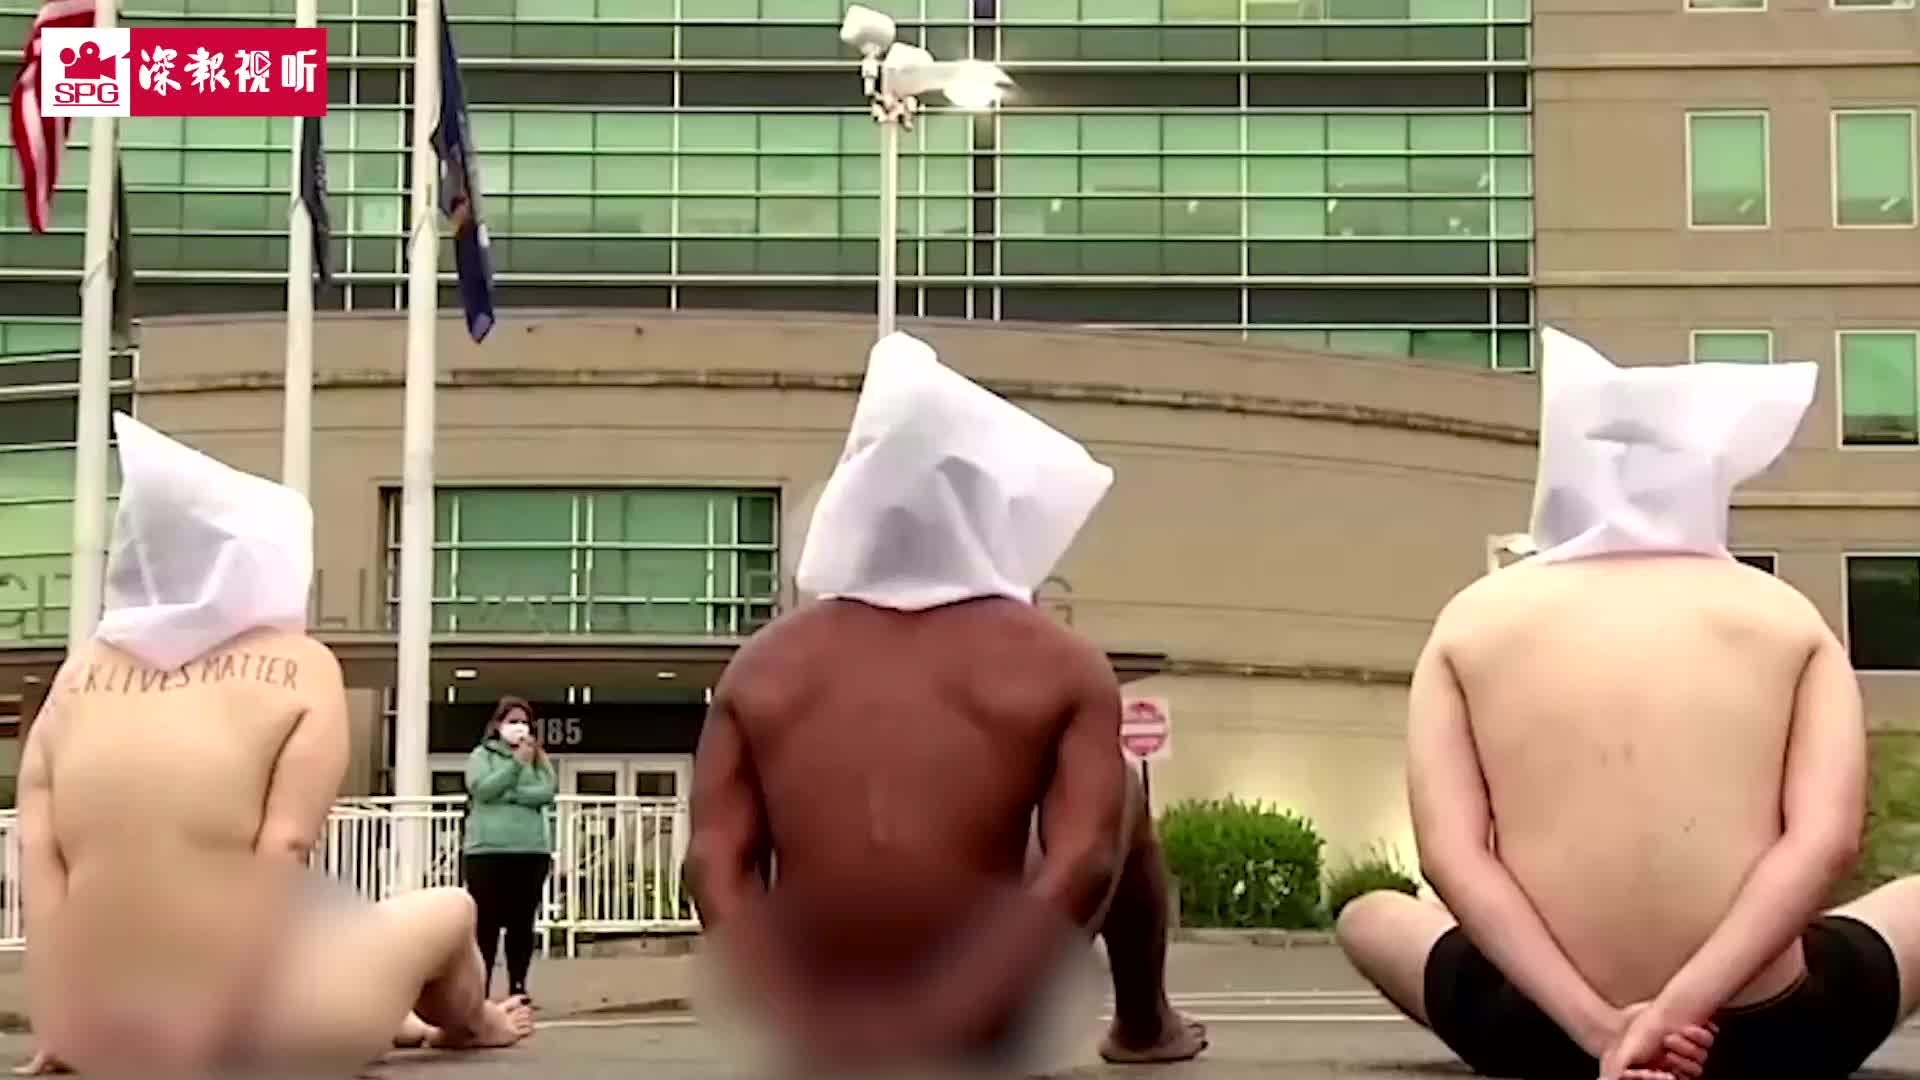 美国街头现裸体抗议者